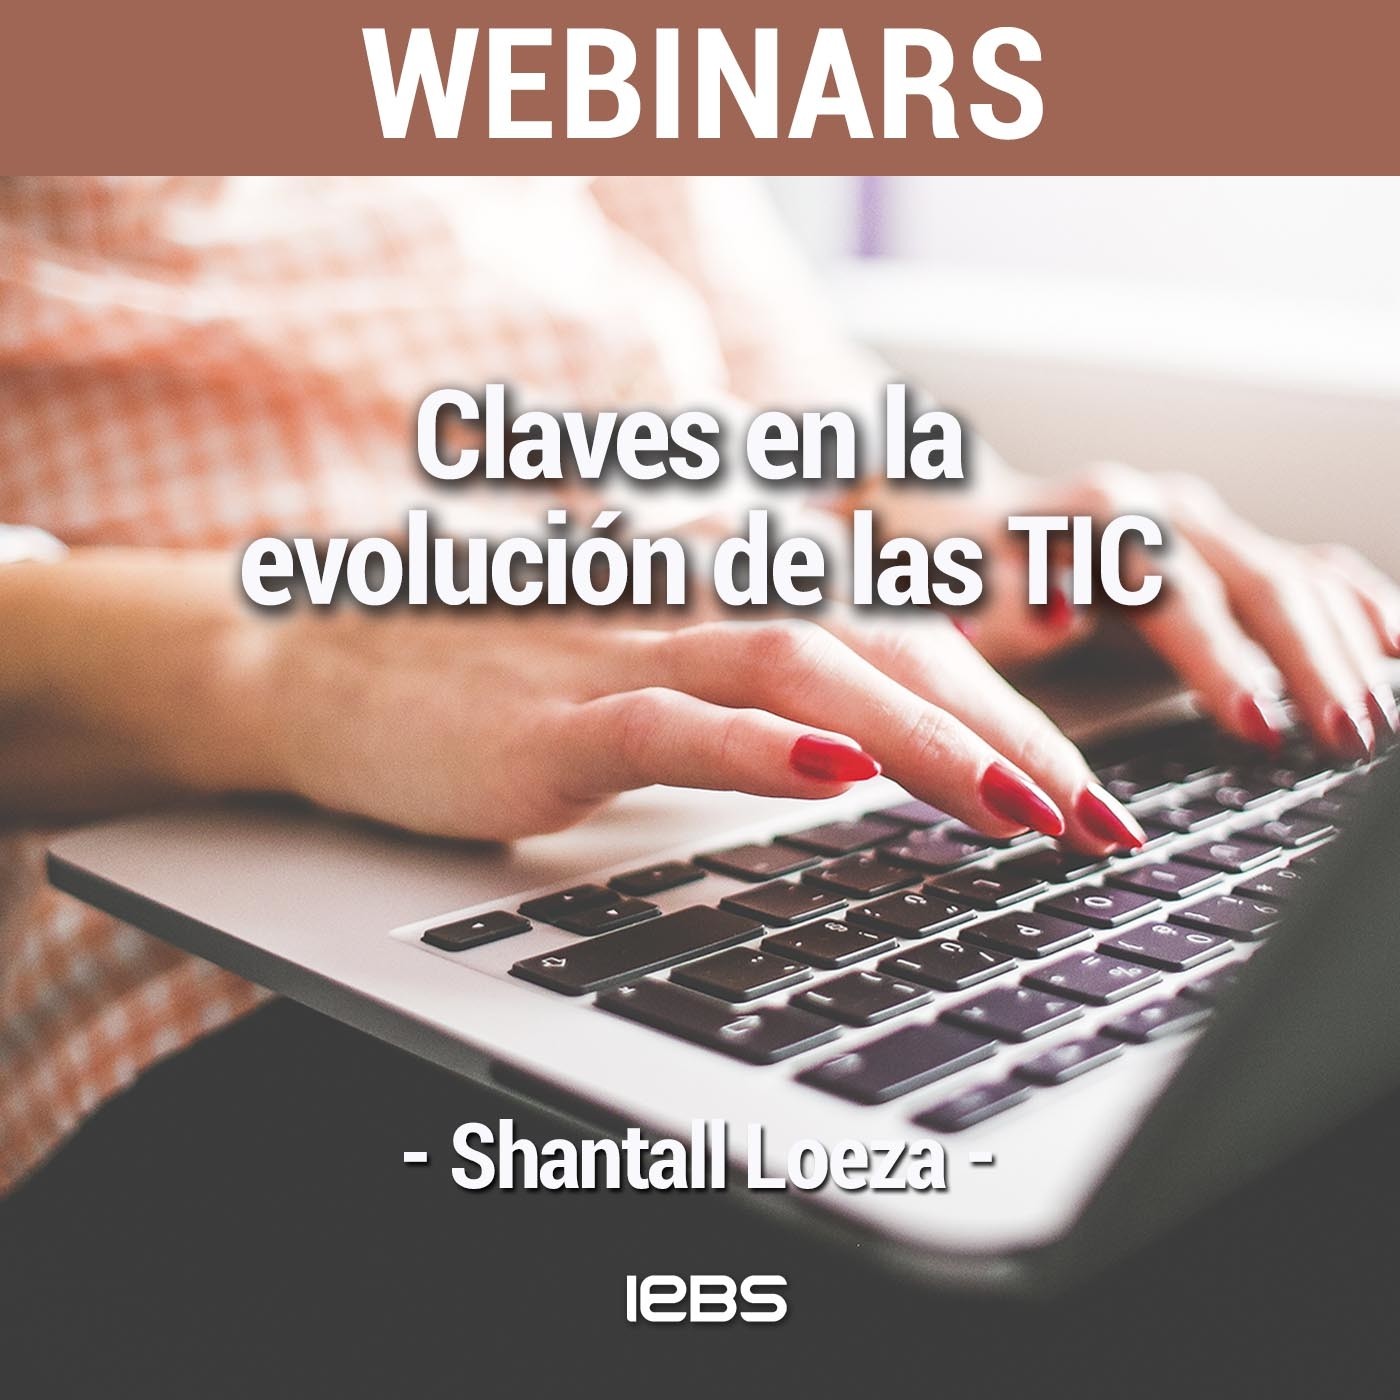 Webinar "Claves en la evolución de las TIC" de Akademus from IEBS